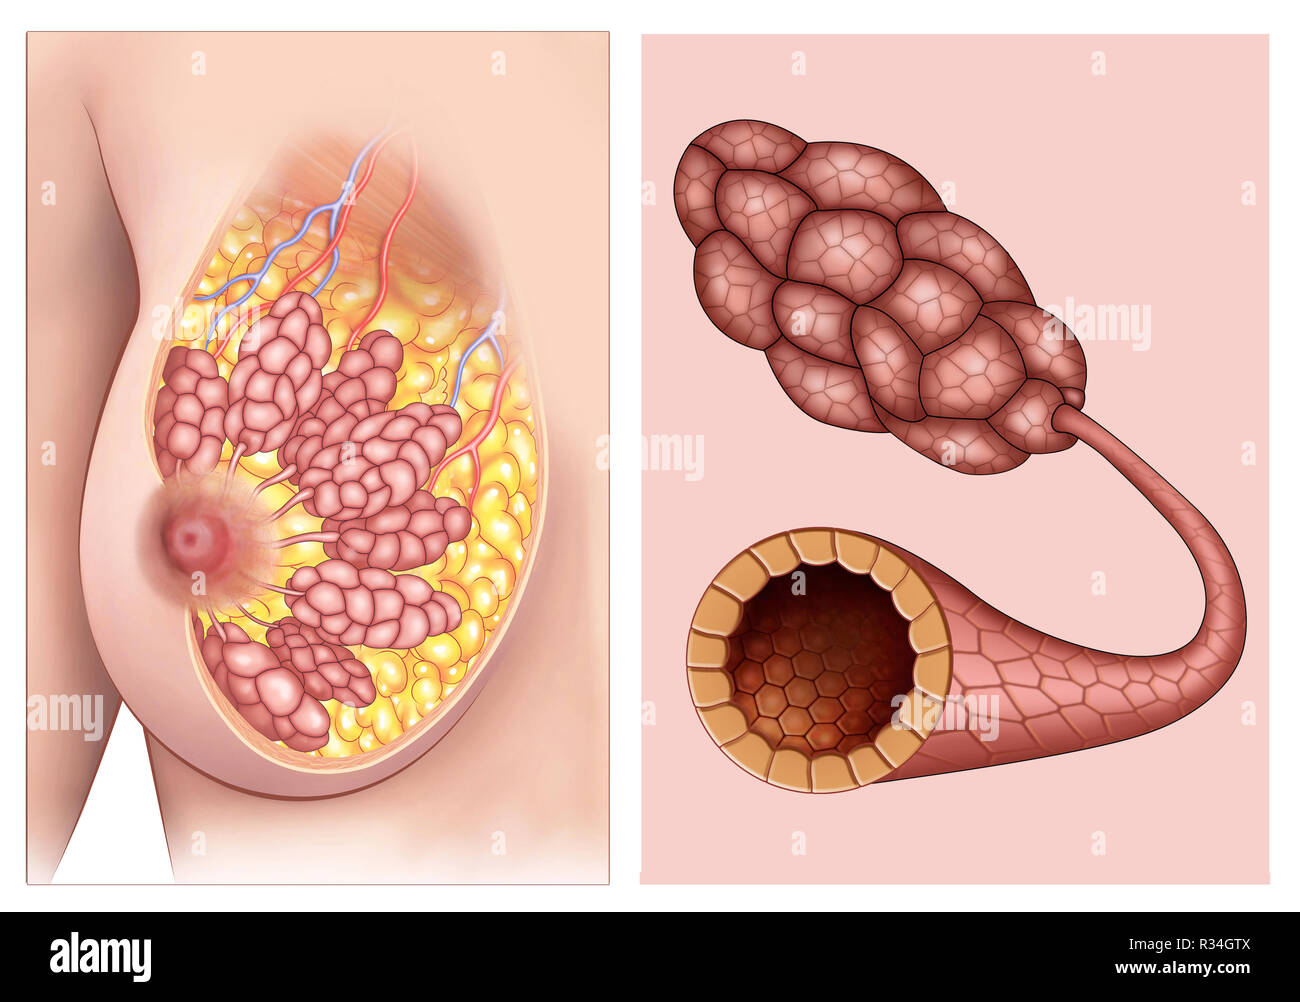 Anatomia de Los Pechos de Mujer, en la que se puede ver claramente Los lobulos y conductos mamarios. Stockfoto